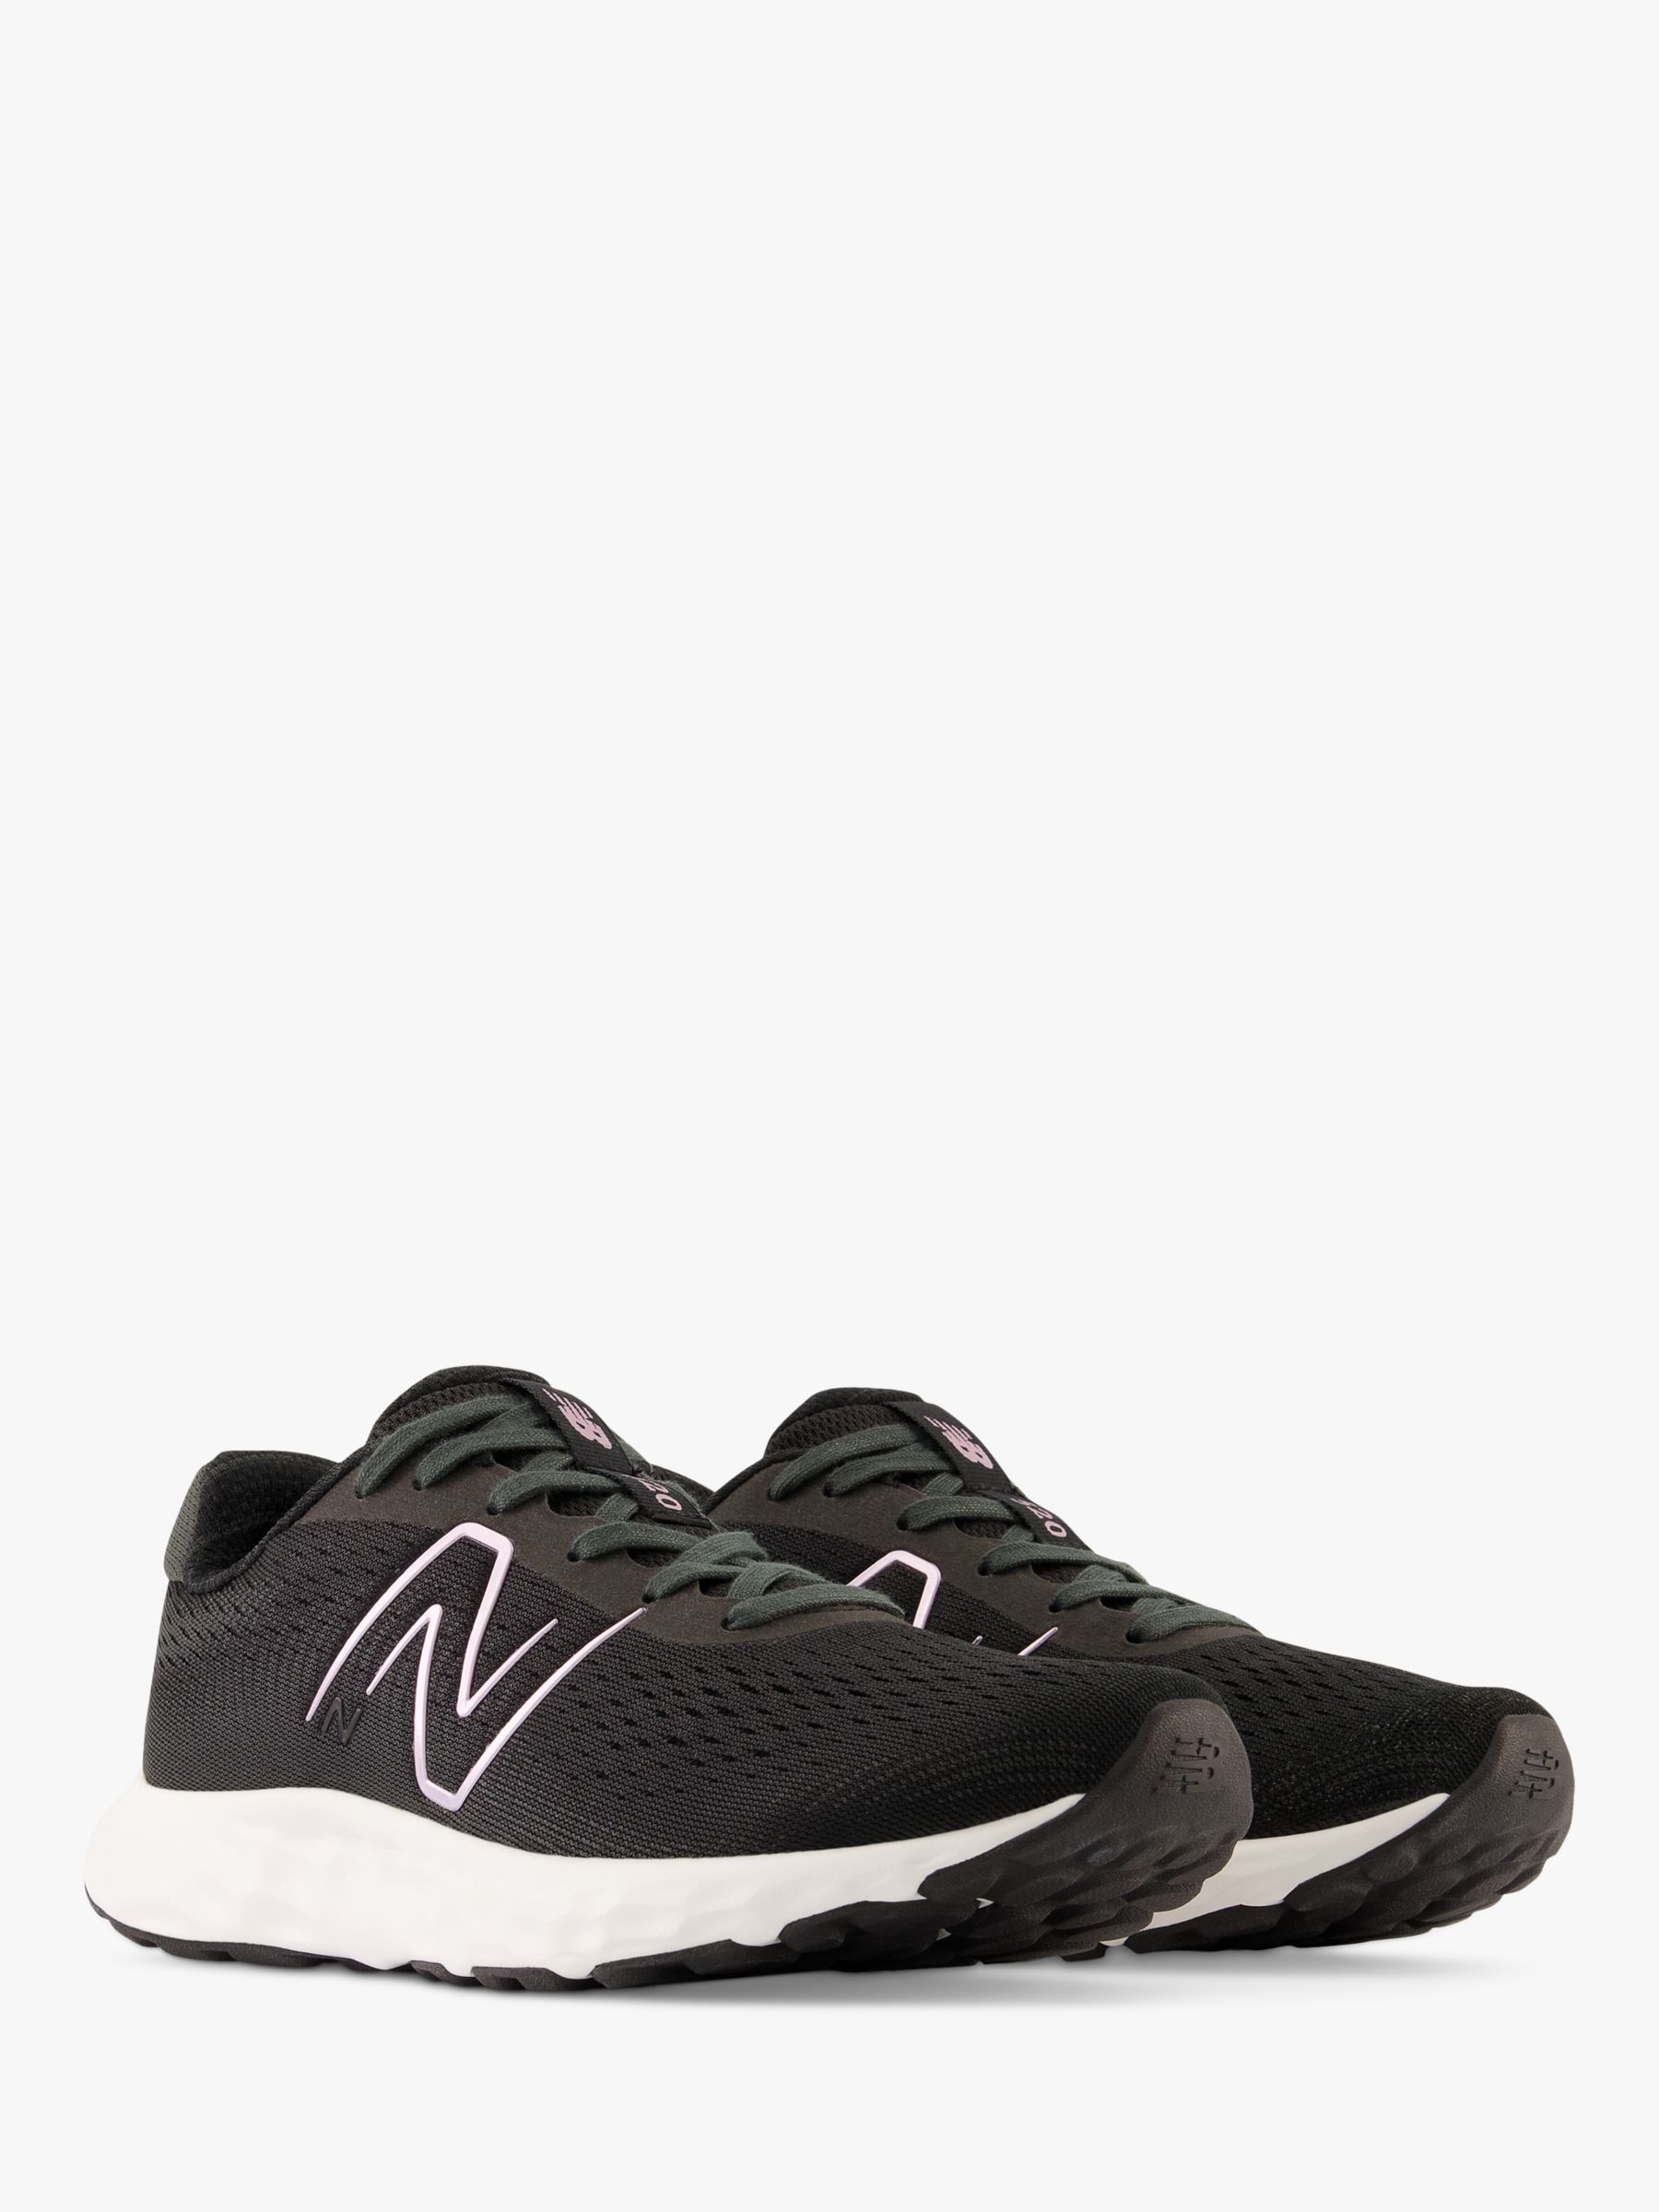 New Balance 520v8 Women's Running Shoes, Black/White, 4